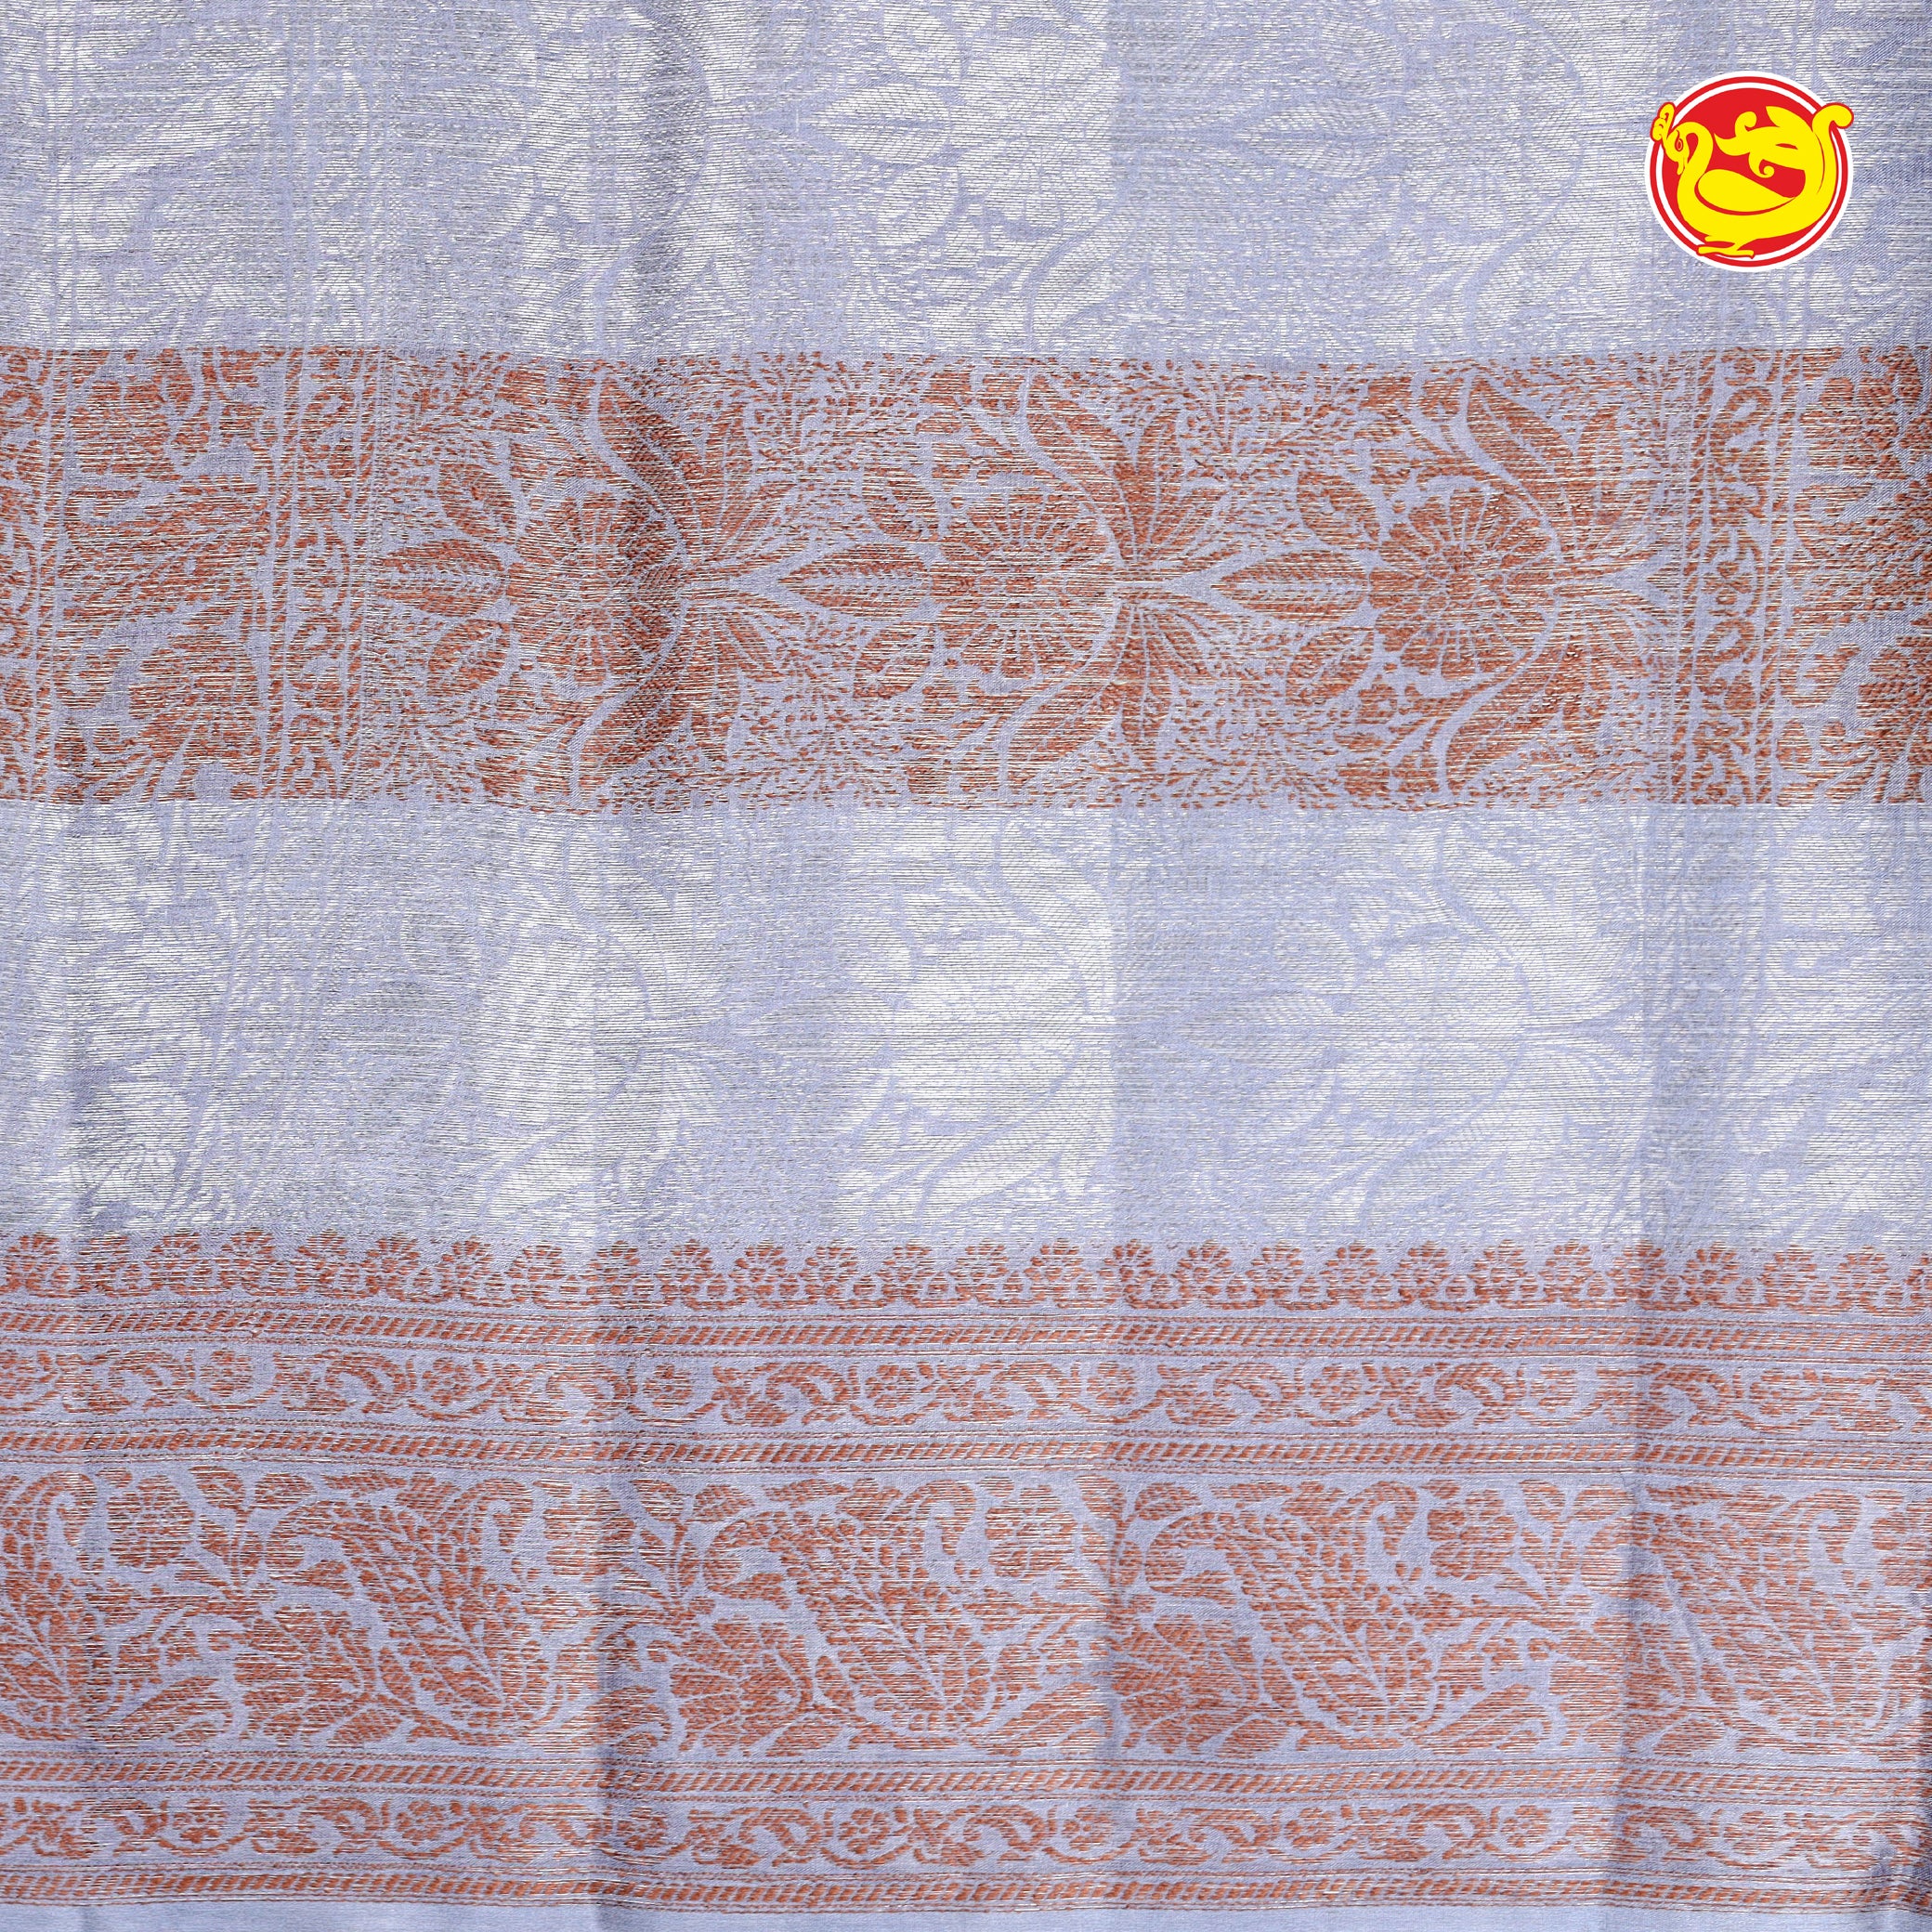 Grey floral digital printed tussar silk saree